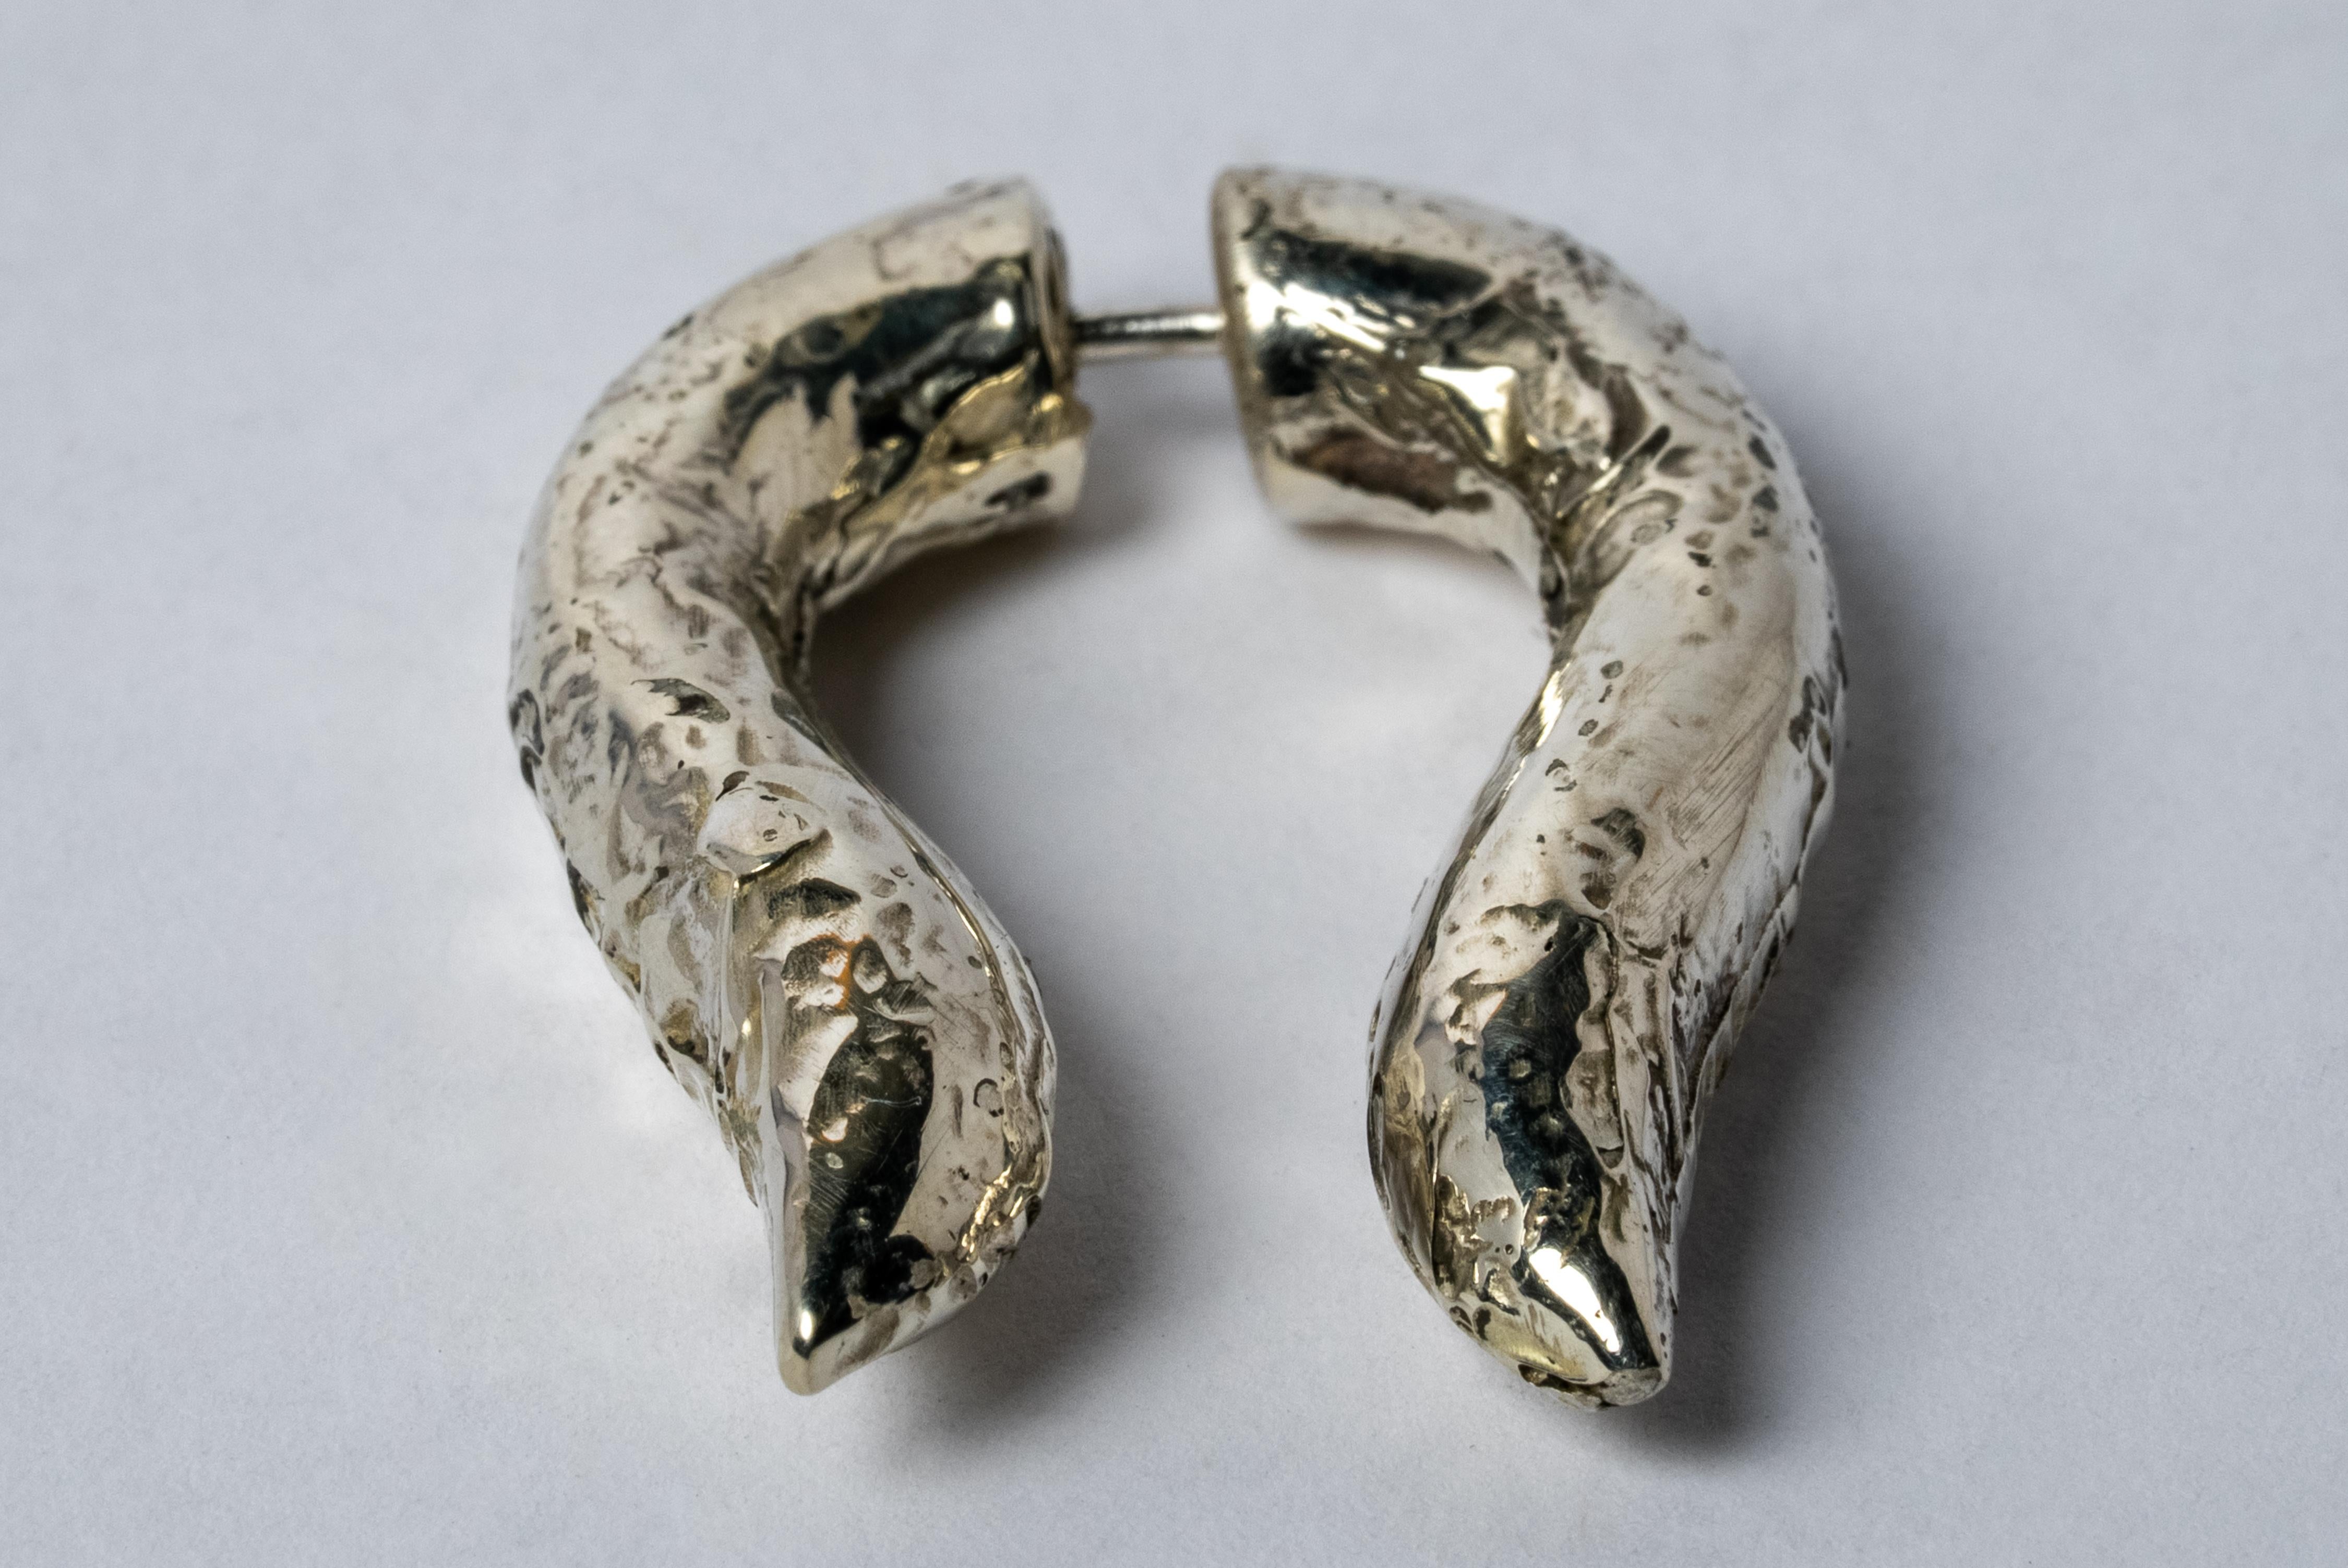 Ohrring in Form von Hathor aus mattem Sterlingsilber mit eingeschmolzener Schicht aus 10 K Weißgold. Jedes Stück ist eine einzigartige Mischung aus Eleganz und Kunstfertigkeit.
Wird als Einzelstück verkauft.